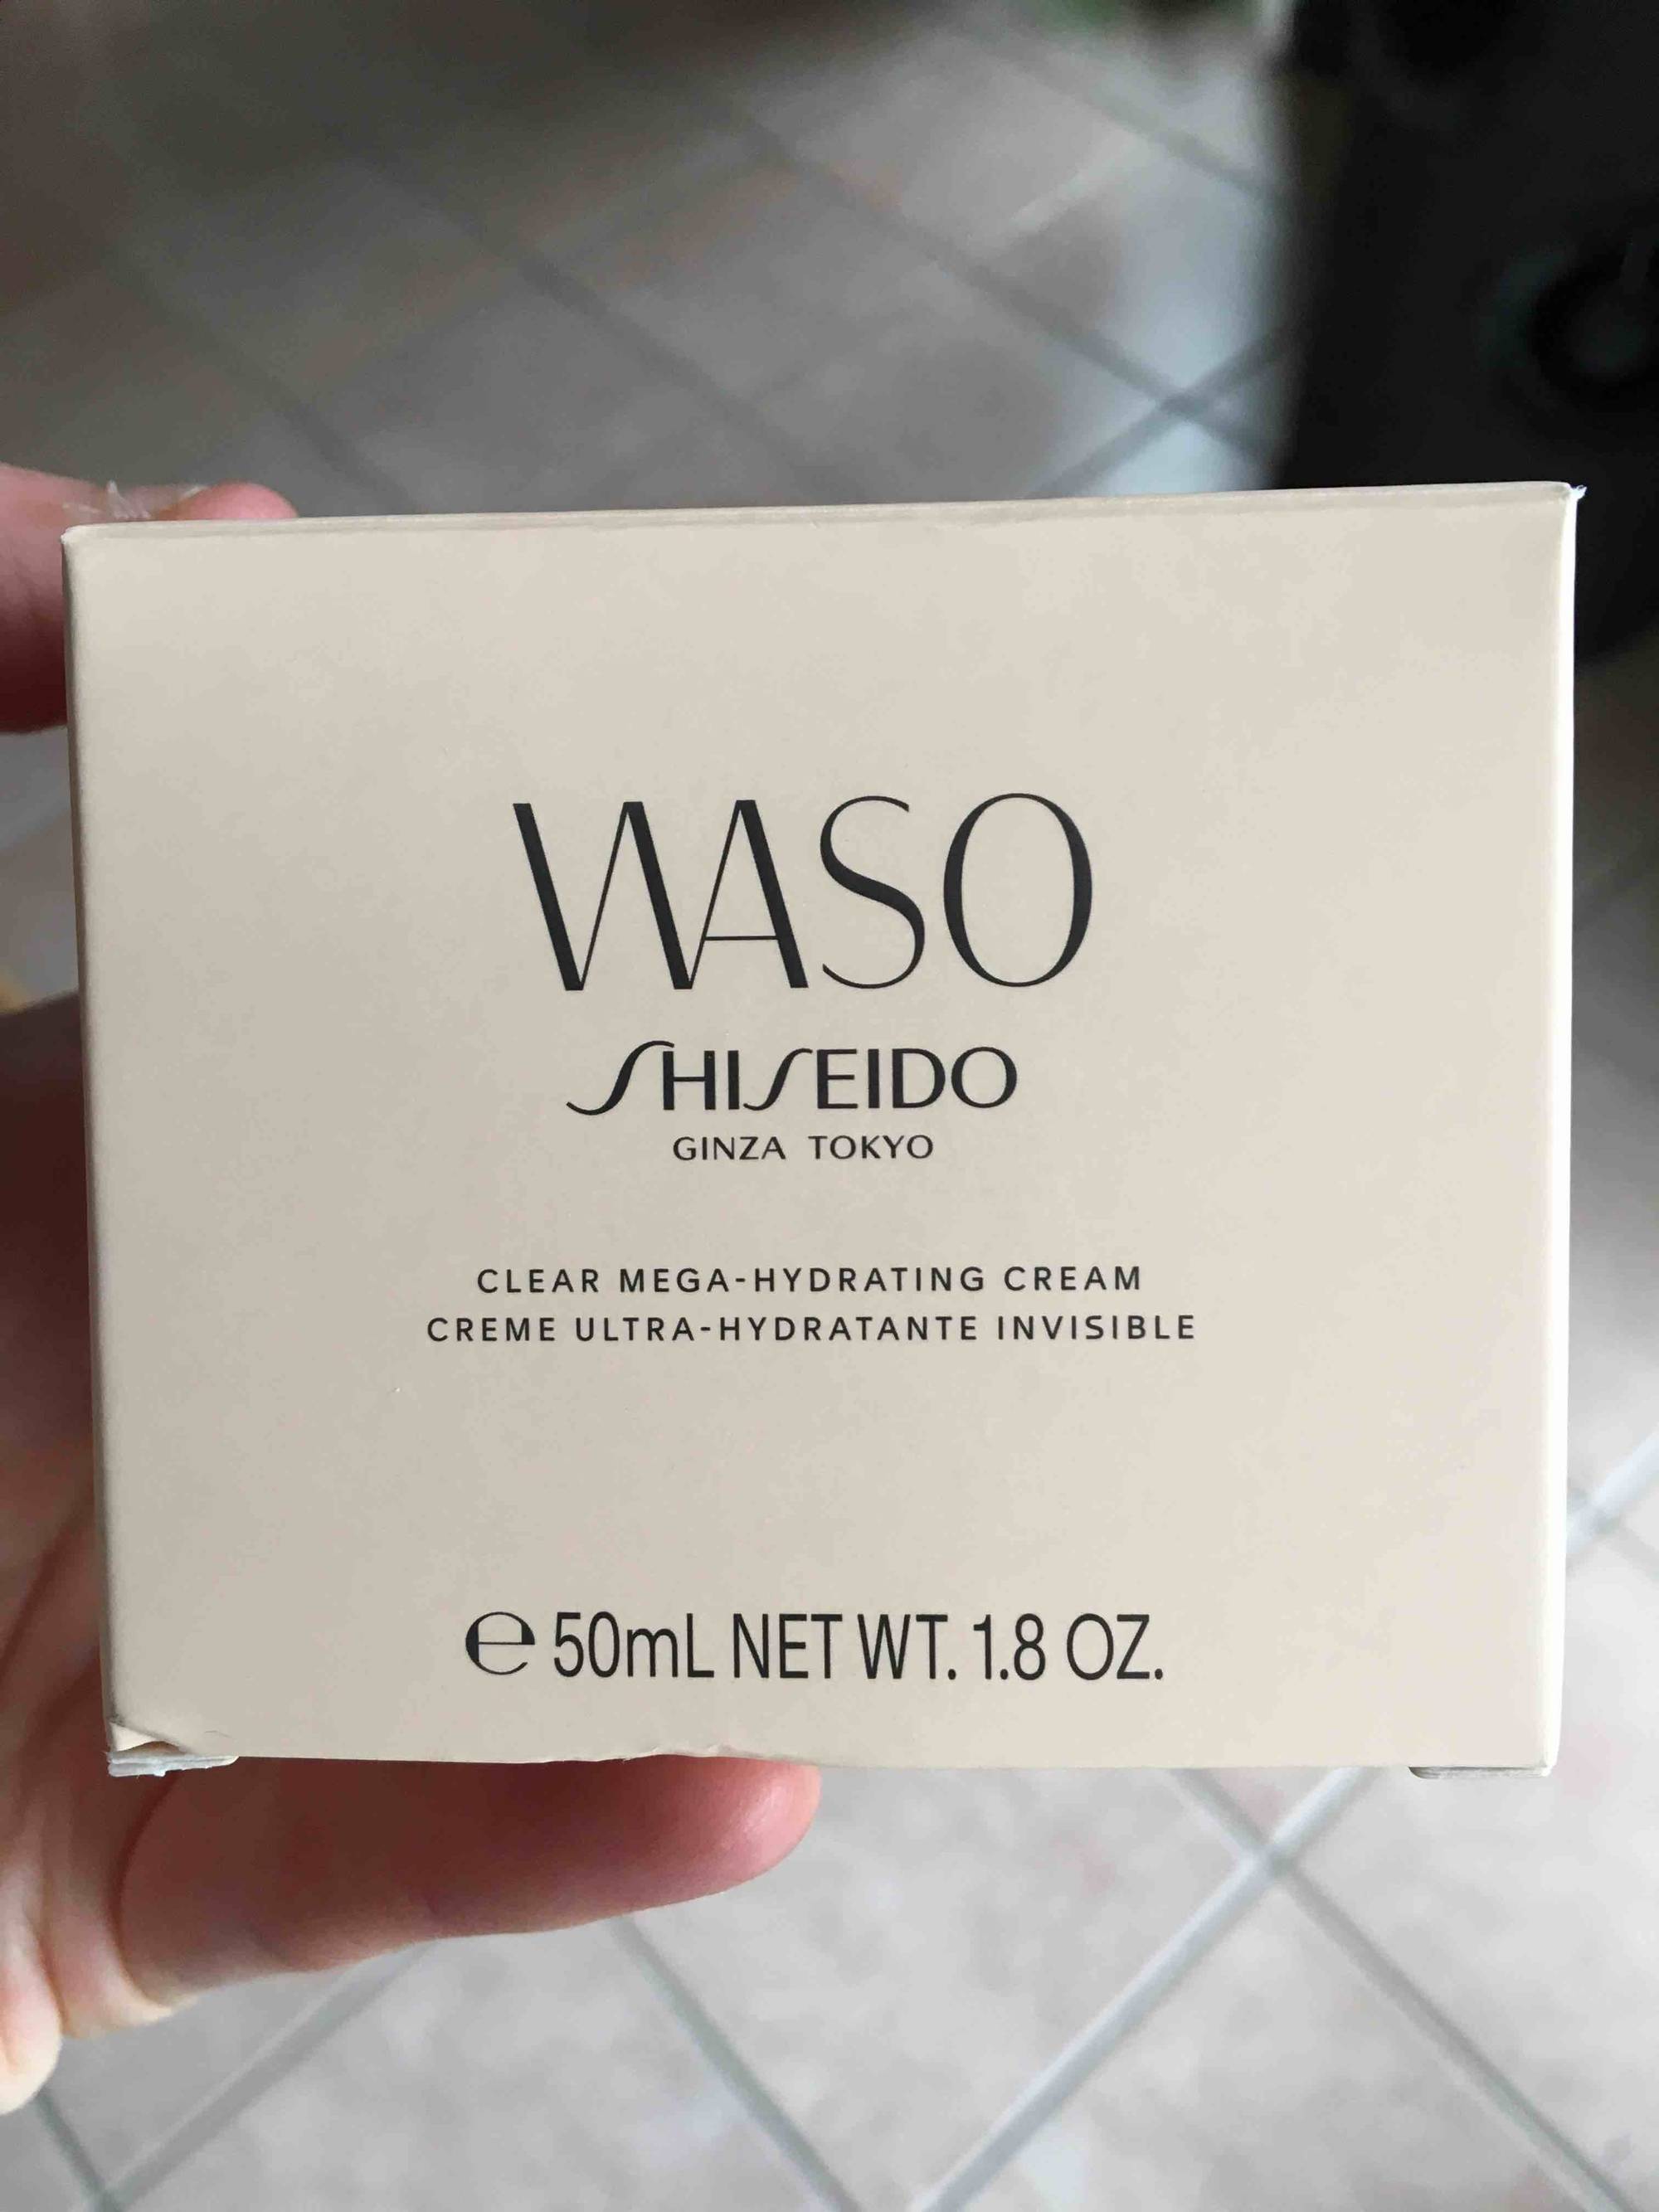 SHISEIDO - Waso - Crème ultra-hydratante invisible